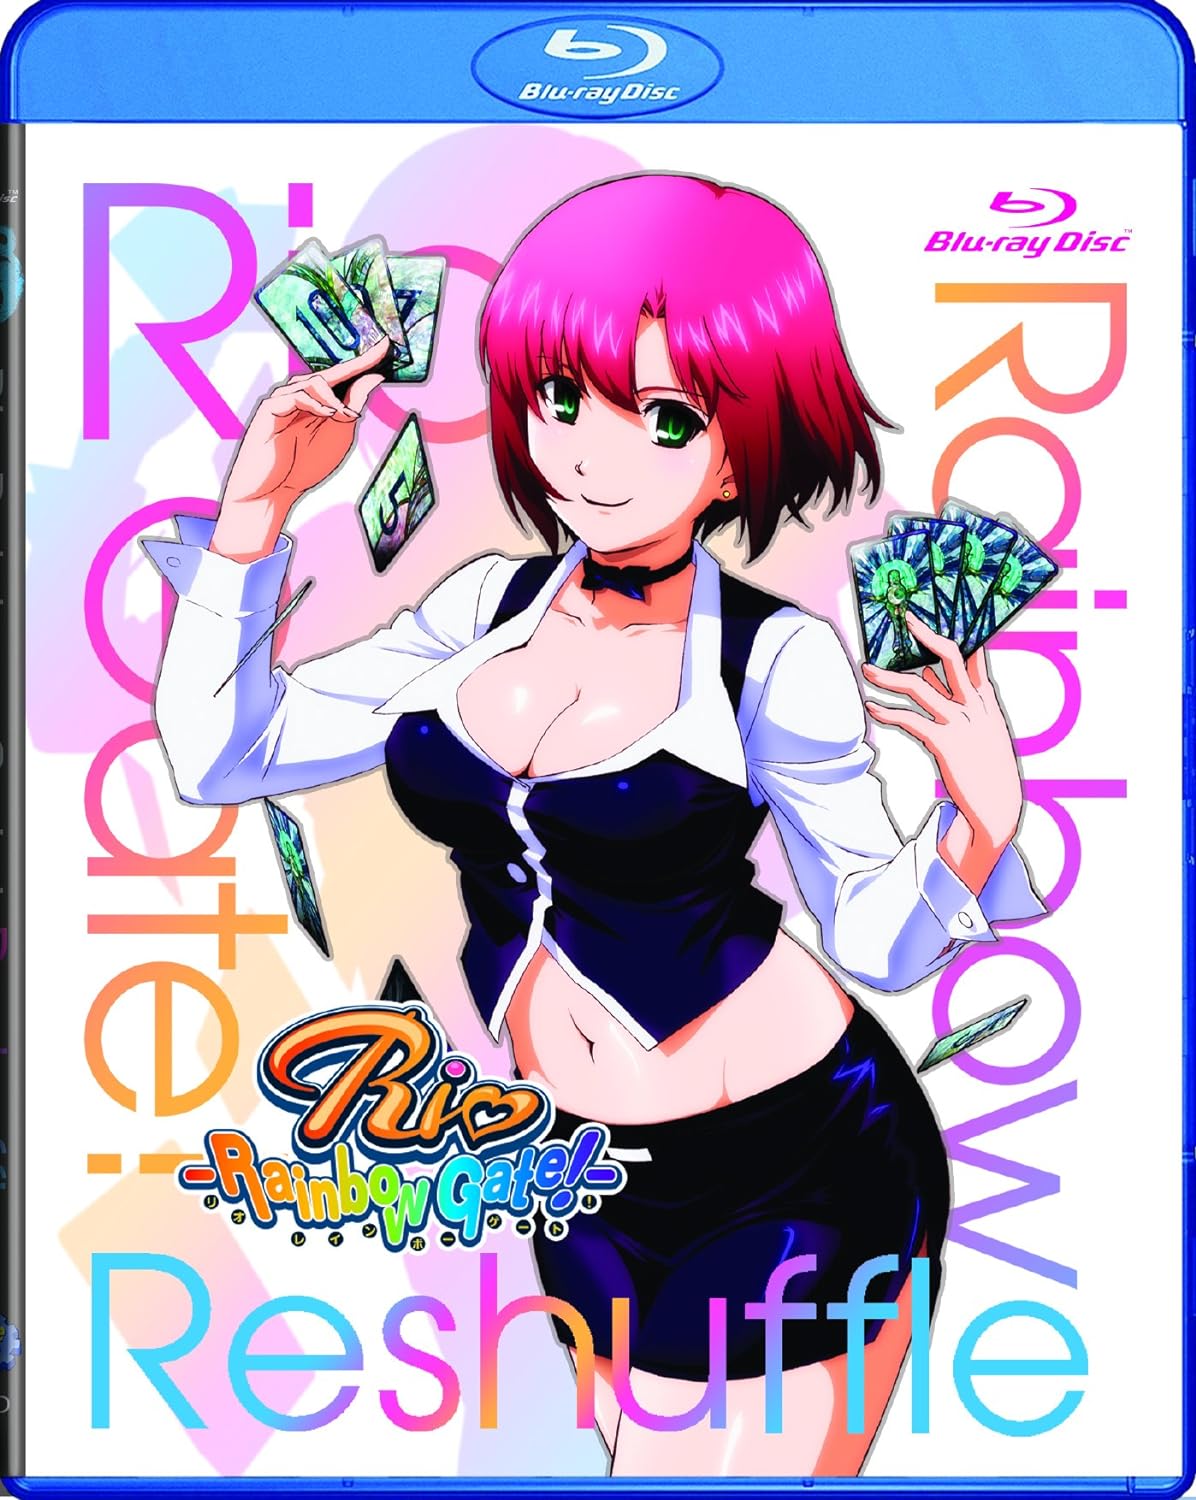 Rio Rainbow Gate Is Reshuffled リオ レインボーゲート 北米輸入版 アニメ Blu-ray あなたが今までに体験したことのないアニメの世界を体験する準備はできていますか？『Rio Rainbow Gate Is Reshuffled リオ レインボーゲート』のBlu-rayが、視聴者をユニークな冒険へと誘います。この作品は、カジノを舞台に繰り広げられる、魅力的なキャラクターたちの物語です。彼らの中でも、特に魅力的な主人公・リオは、彼女の周りで起こる様々な事件やトラブルに立ち向かいながら、目標を達成するために奮闘します。 本作品はただのアニメではありません。美しいビジュアル、魅力溢れるキャラクター、そして心躍るストーリーが融合され、視聴者をその魅力的な世界へと引き込みます。このBlu-rayを手に入れることで、リオの冒険に同行し、彼女が直面する挑戦や、彼女の魅力的な友人たちとの関係を、目の前で繰り広げることができます。 さらに、このBlu-rayは、家庭での映画鑑賞を新しい高みへと引き上げます。圧倒的な映像美は、あなたがこれまで見てきたアニメの中でも一際際立ち、リビングルームがプライベートシアターに早変わり。スリリングかつエネルギッシュなこの物語が、あなたの日常に新しい彩りを加えること間違いありません。 『Rio Rainbow Gate Is Reshuffled リオ レインボーゲート』は、ただのエンターテインメントではなく、一つの芸術作品。このBlu-rayでしか体験できない圧倒的な美しさと、心を打つストーリーラインが、あなたを待っています。今すぐ手に入れて、リオとその仲間たちの息をのむような冒険に飛び込みましょう。未知の世界が、あなたの前に広がっています。 北米版Blu-rayディスクは、地域コード(リージョンコード)は日本と同じリージョンAです。 ただし、輸入版Blu-rayディスクの中には、地域コードに加えて国コードロックがかかっているものがあります。 この国コードロックのあるディスクは、国内向けBlu-rayプレイヤーで再生できない場合があります。 国コードロックのあるディスクを再生できる機器は以下の通りです。 - 国コード変更機能のあるBlu-rayプレイヤー - リージョンフリーのBlu-rayプレイヤー - PlayStation3/4/5 - パソコンのBlu-rayプレイヤーソフト また、輸入版ディスクは英語字幕が強制表示されるものが多く、プレイヤーによっては設定で字幕の解除が可能です。Rio Rainbow Gate Is Reshuffled リオ レインボーゲート 北米輸入版 アニメ Blu-ray あなたが今までに体験したことのないアニメの世界を体験する準備はできていますか？『Rio Rainbow Gate Is Reshuffled リオ レインボーゲート』のBlu-rayが、視聴者をユニークな冒険へと誘います。この作品は、カジノを舞台に繰り広げられる、魅力的なキャラクターたちの物語です。彼らの中でも、特に魅力的な主人公・リオは、彼女の周りで起こる様々な事件やトラブルに立ち向かいながら、目標を達成するために奮闘します。 本作品はただのアニメではありません。美しいビジュアル、魅力溢れるキャラクター、そして心躍るストーリーが融合され、視聴者をその魅力的な世界へと引き込みます。このBlu-rayを手に入れることで、リオの冒険に同行し、彼女が直面する挑戦や、彼女の魅力的な友人たちとの関係を、目の前で繰り広げることができます。 さらに、このBlu-rayは、家庭での映画鑑賞を新しい高みへと引き上げます。圧倒的な映像美は、あなたがこれまで見てきたアニメの中でも一際際立ち、リビングルームがプライベートシアターに早変わり。スリリングかつエネルギッシュなこの物語が、あなたの日常に新しい彩りを加えること間違いありません。 『Rio Rainbow Gate Is Reshuffled リオ レインボーゲート』は、ただのエンターテインメントではなく、一つの芸術作品。このBlu-rayでしか体験できない圧倒的な美しさと、心を打つストーリーラインが、あなたを待っています。今すぐ手に入れて、リオとその仲間たちの息をのむような冒険に飛び込みましょう。未知の世界が、あなたの前に広がっています。 北米版Blu-rayディスクは、地域コード(リージョンコード)は日本と同じリージョンAです。 ただし、輸入版Blu-rayディスクの中には、地域コードに加えて国コードロックがかかっているものがあります。 この国コードロックのあるディスクは、国内向けBlu-rayプレイヤーで再生できない場合があります。 国コードロックのあるディスクを再生できる機器は以下の通りです。 - 国コード変更機能のあるBlu-rayプレイヤー - リージョンフリーのBlu-rayプレイヤー - PlayStation3/4/5 - パソコンのBlu-rayプレイヤーソフト また、輸入版ディスクは英語字幕が強制表示されるものが多く、プレイヤーによっては設定で字幕の解除が可能です。